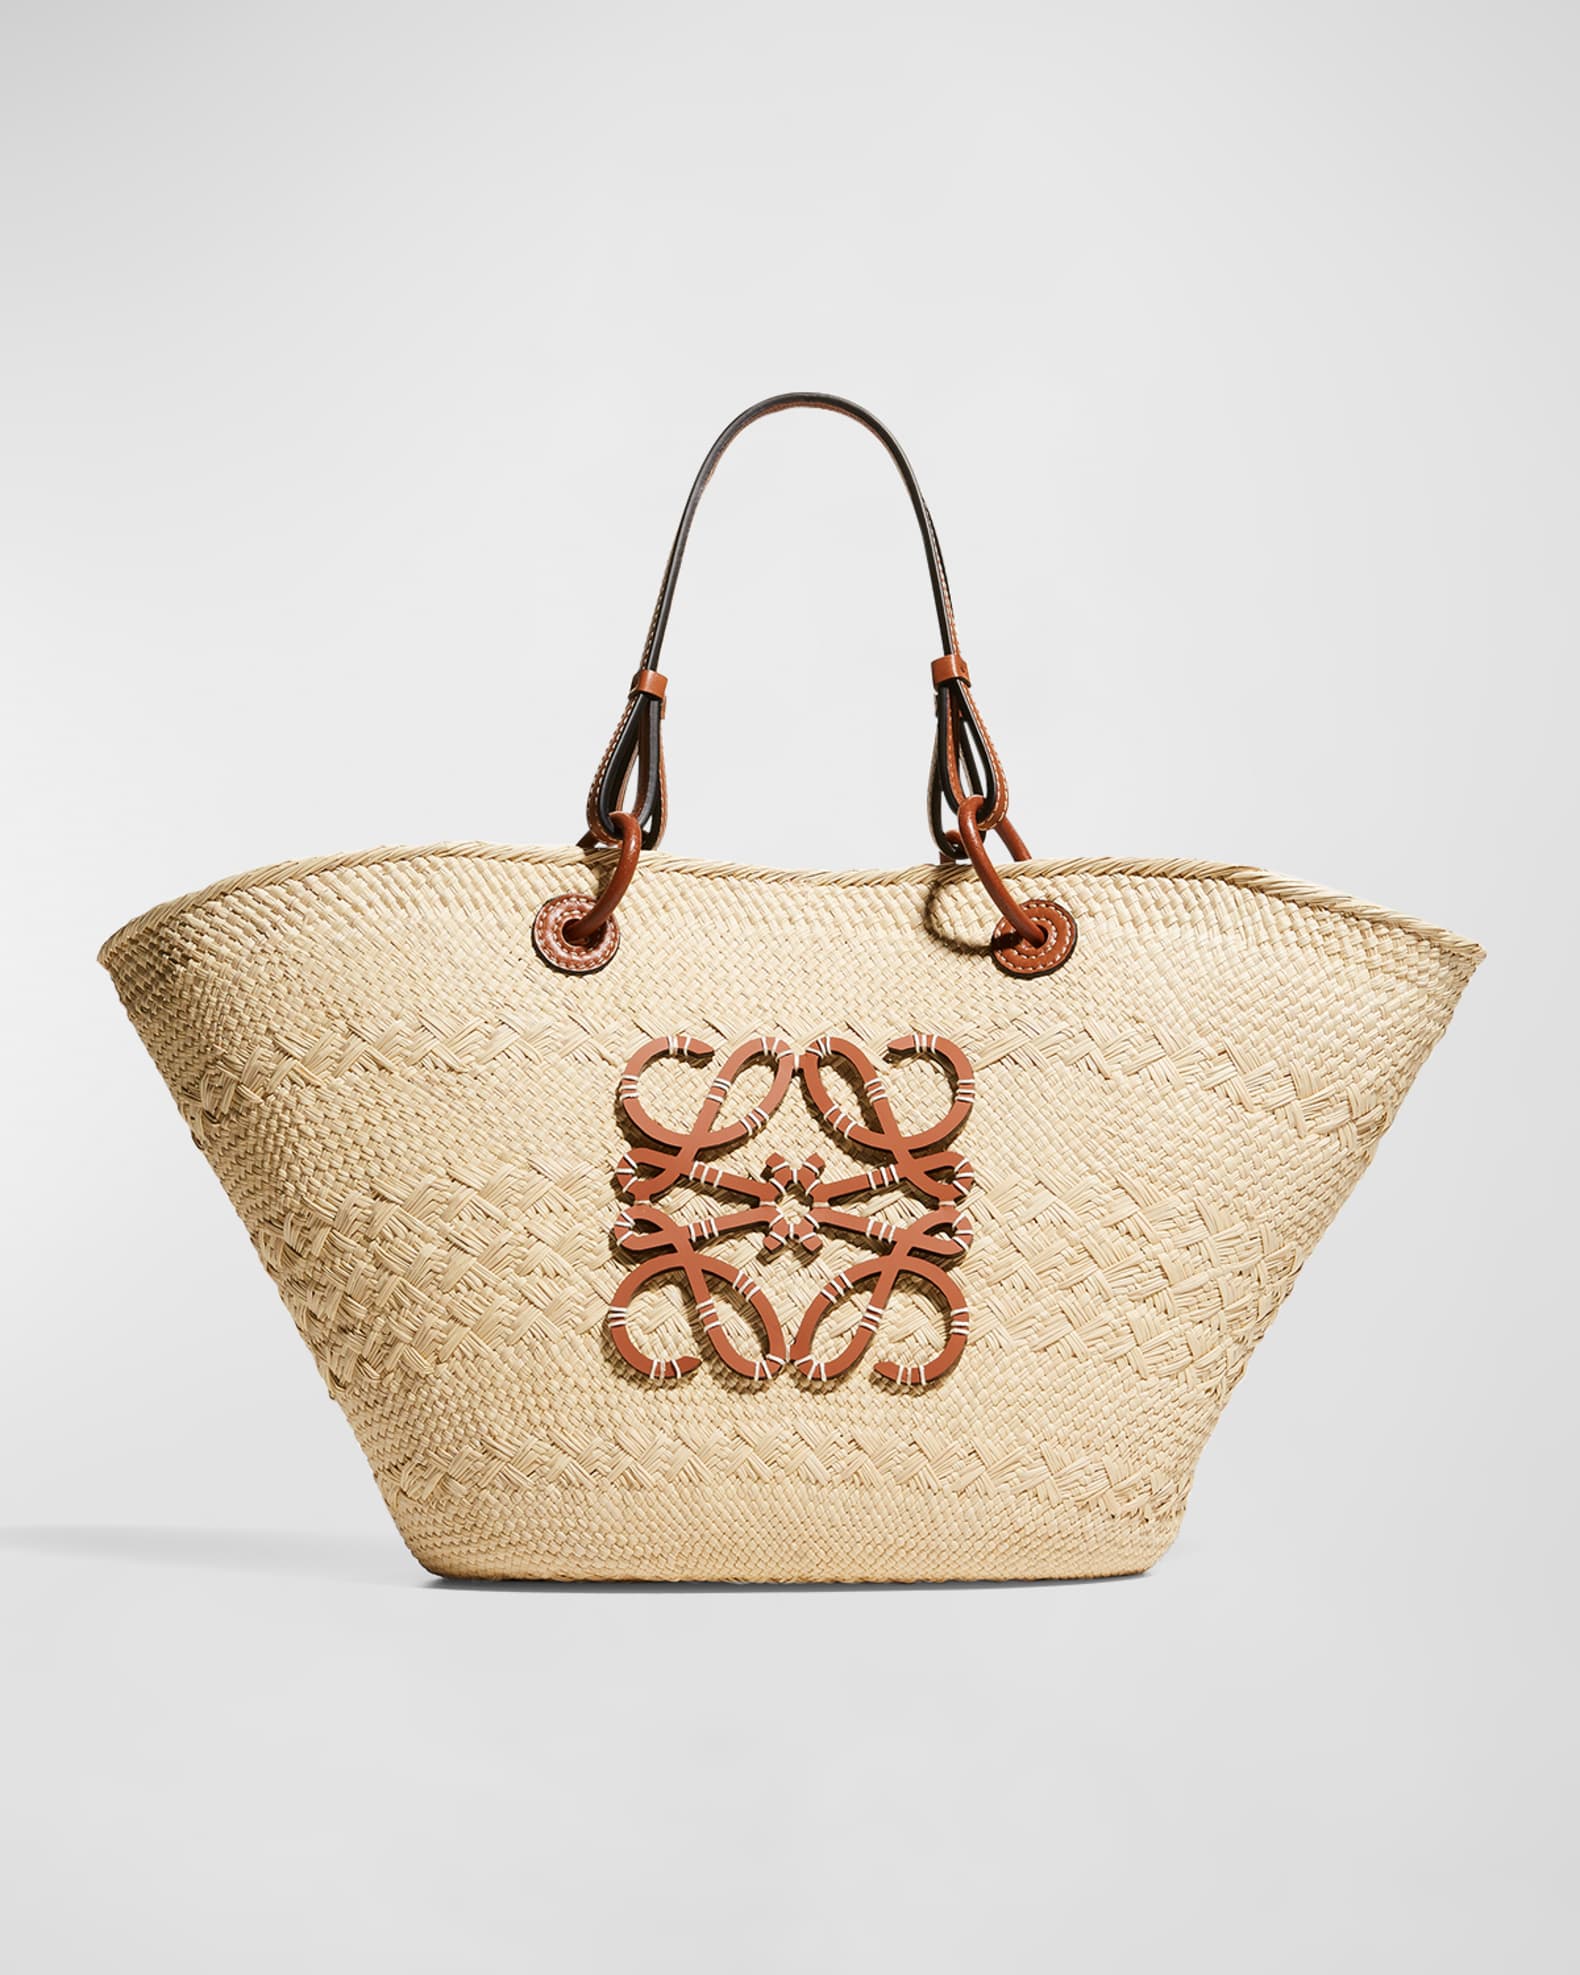 Loewe x Paula's Ibiza Woven Drawstring Bucket Bag